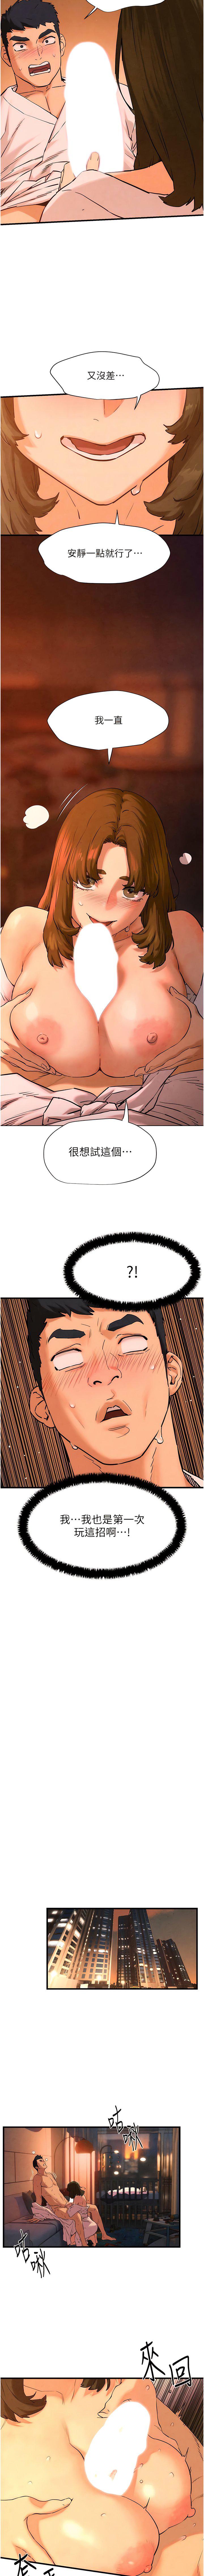 韩国污漫画 欲海交鋒 第5话 奶汁大喷发的乳交 16